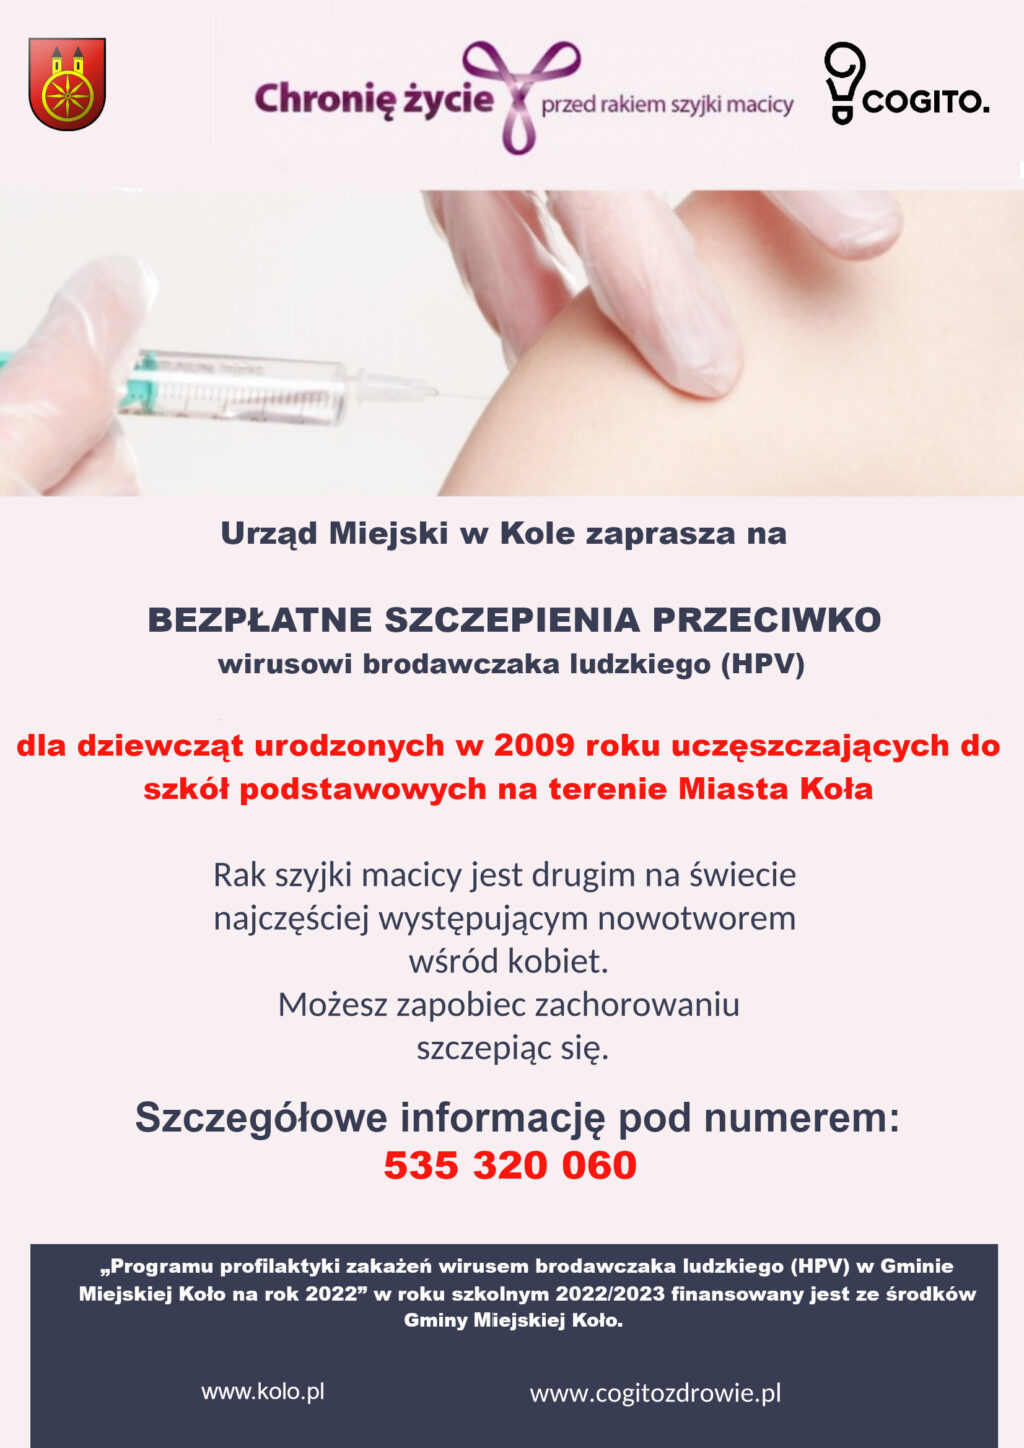 Plakat informujący o Programie szczepień HPV w Kole. Treść plakatu poniżej w artykule.